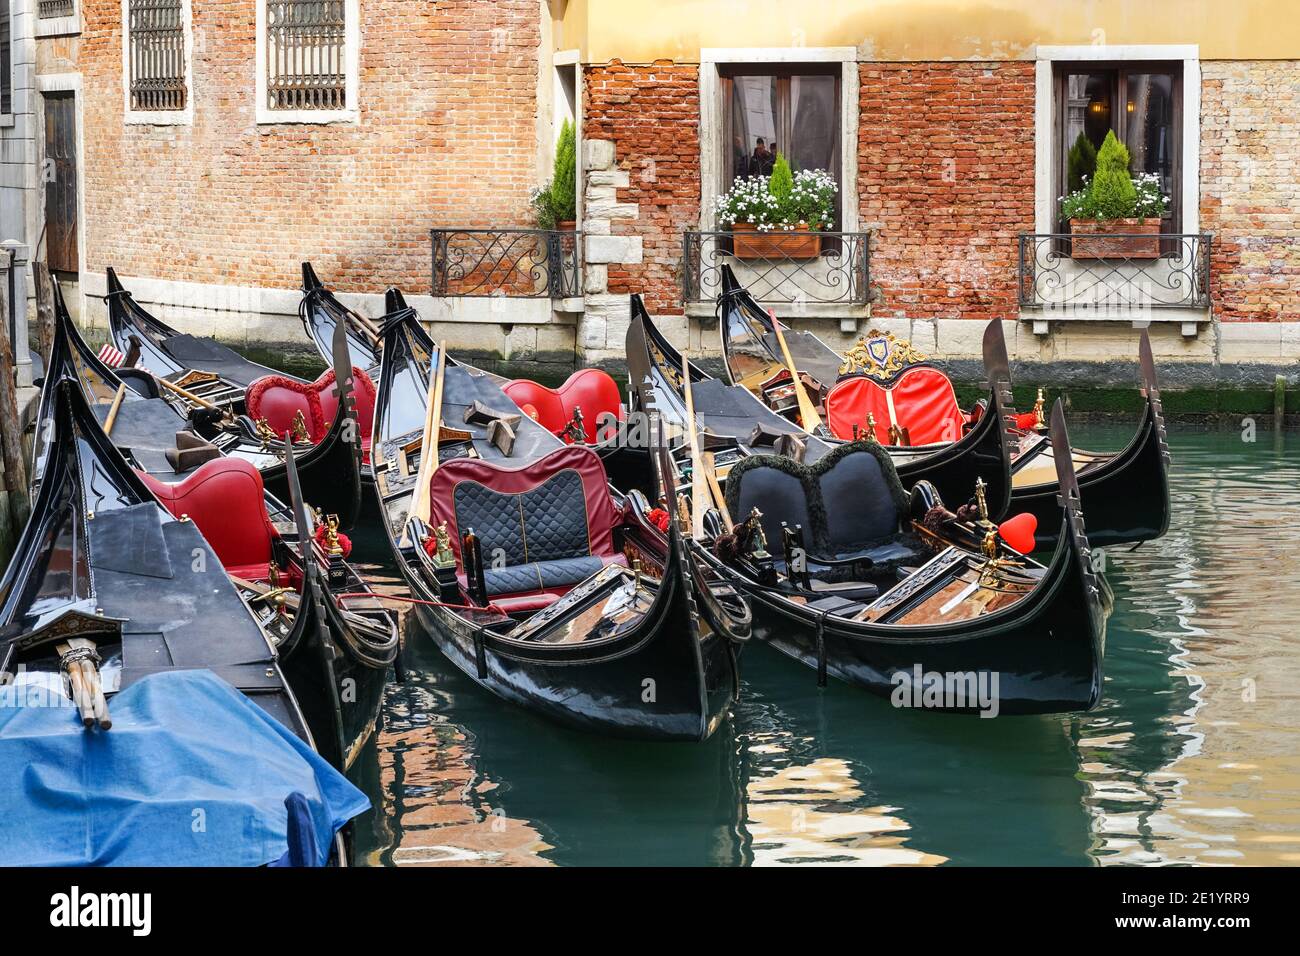 Gondole vénitienne traditionnelle, gondoles vénitiennes sur le canal de Venise, Italie Banque D'Images